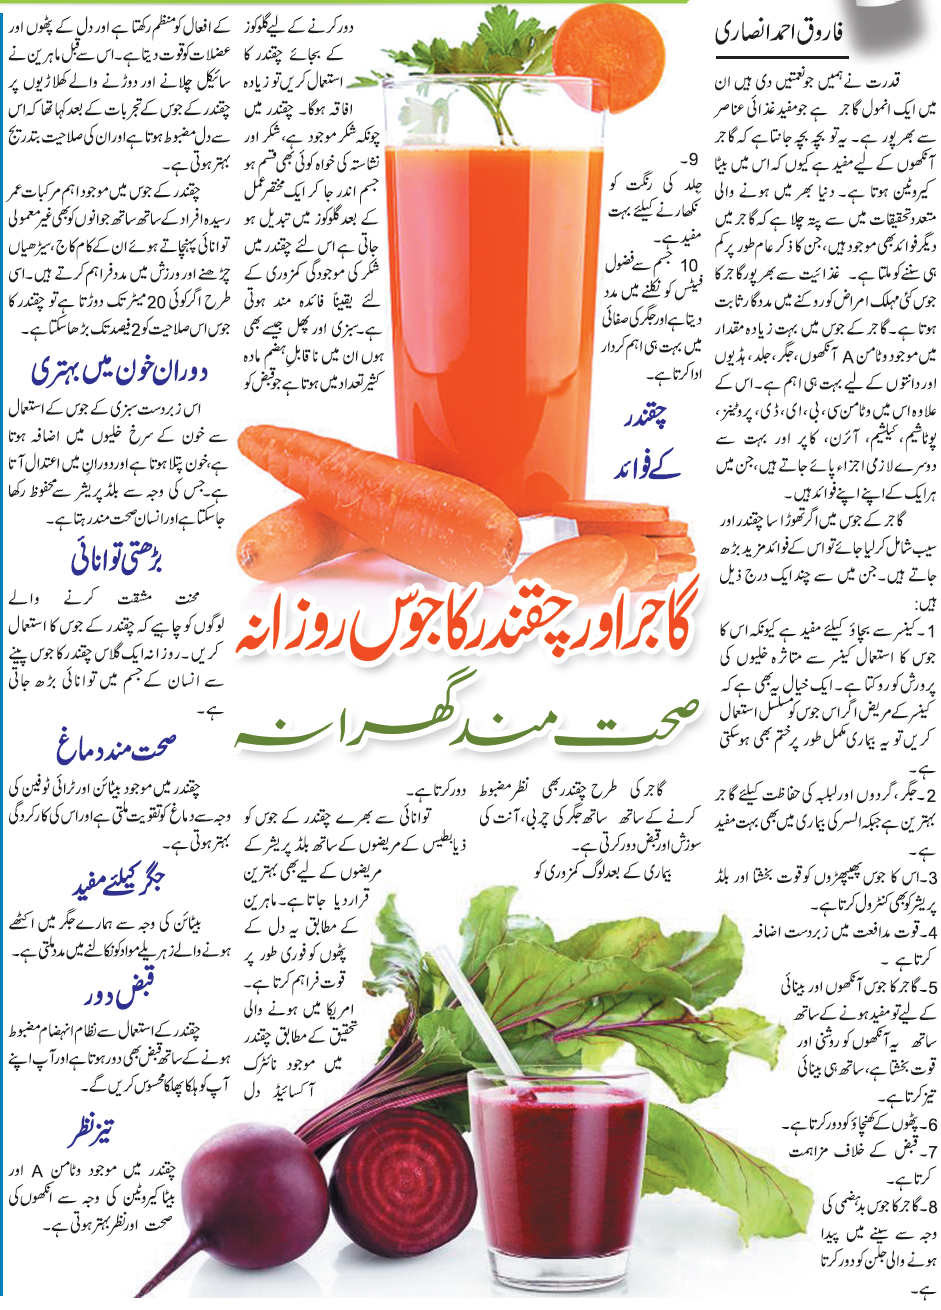 Health Benefits of Carrot & Beet Juice (Urdu-English)